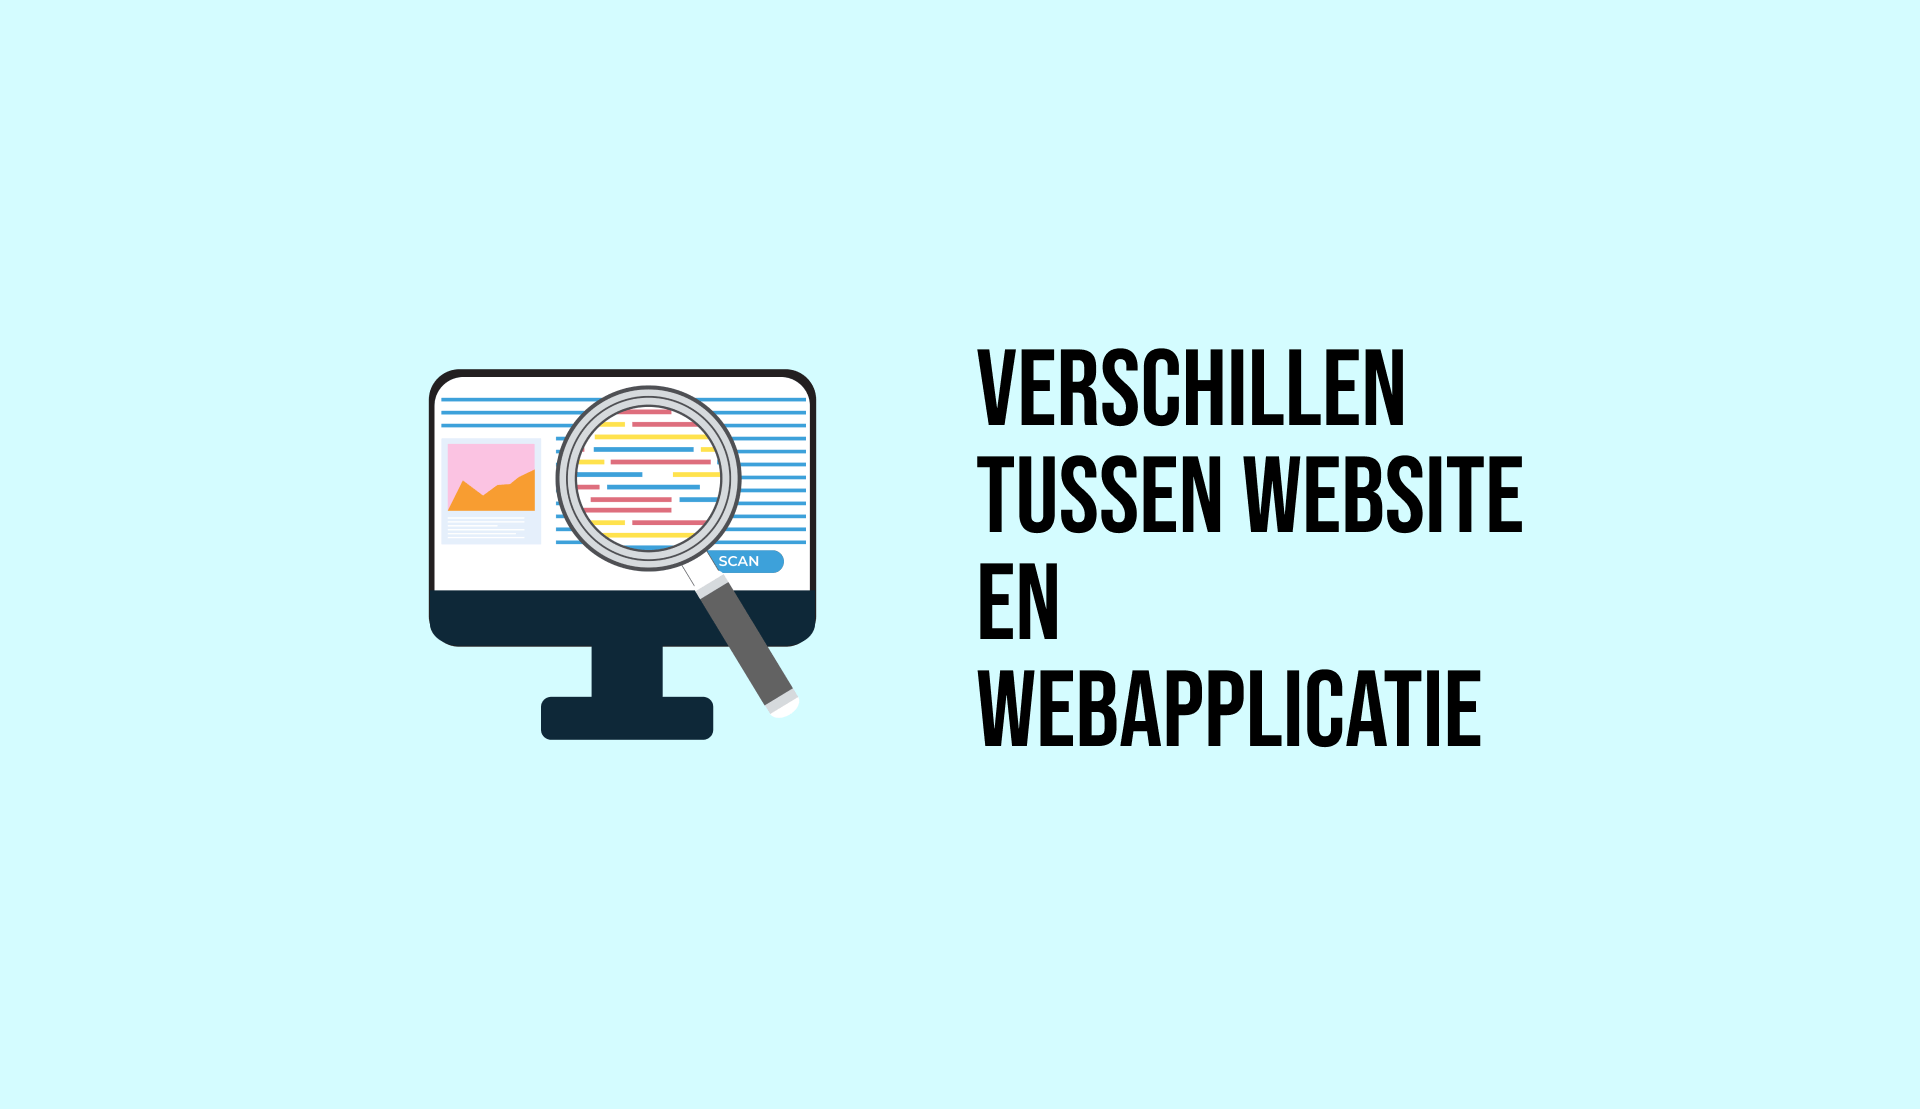 Een geïllustreerd beeldscherm met aan de rechterkant een tekst 'Verschillen tussen website en webapplicatie'.